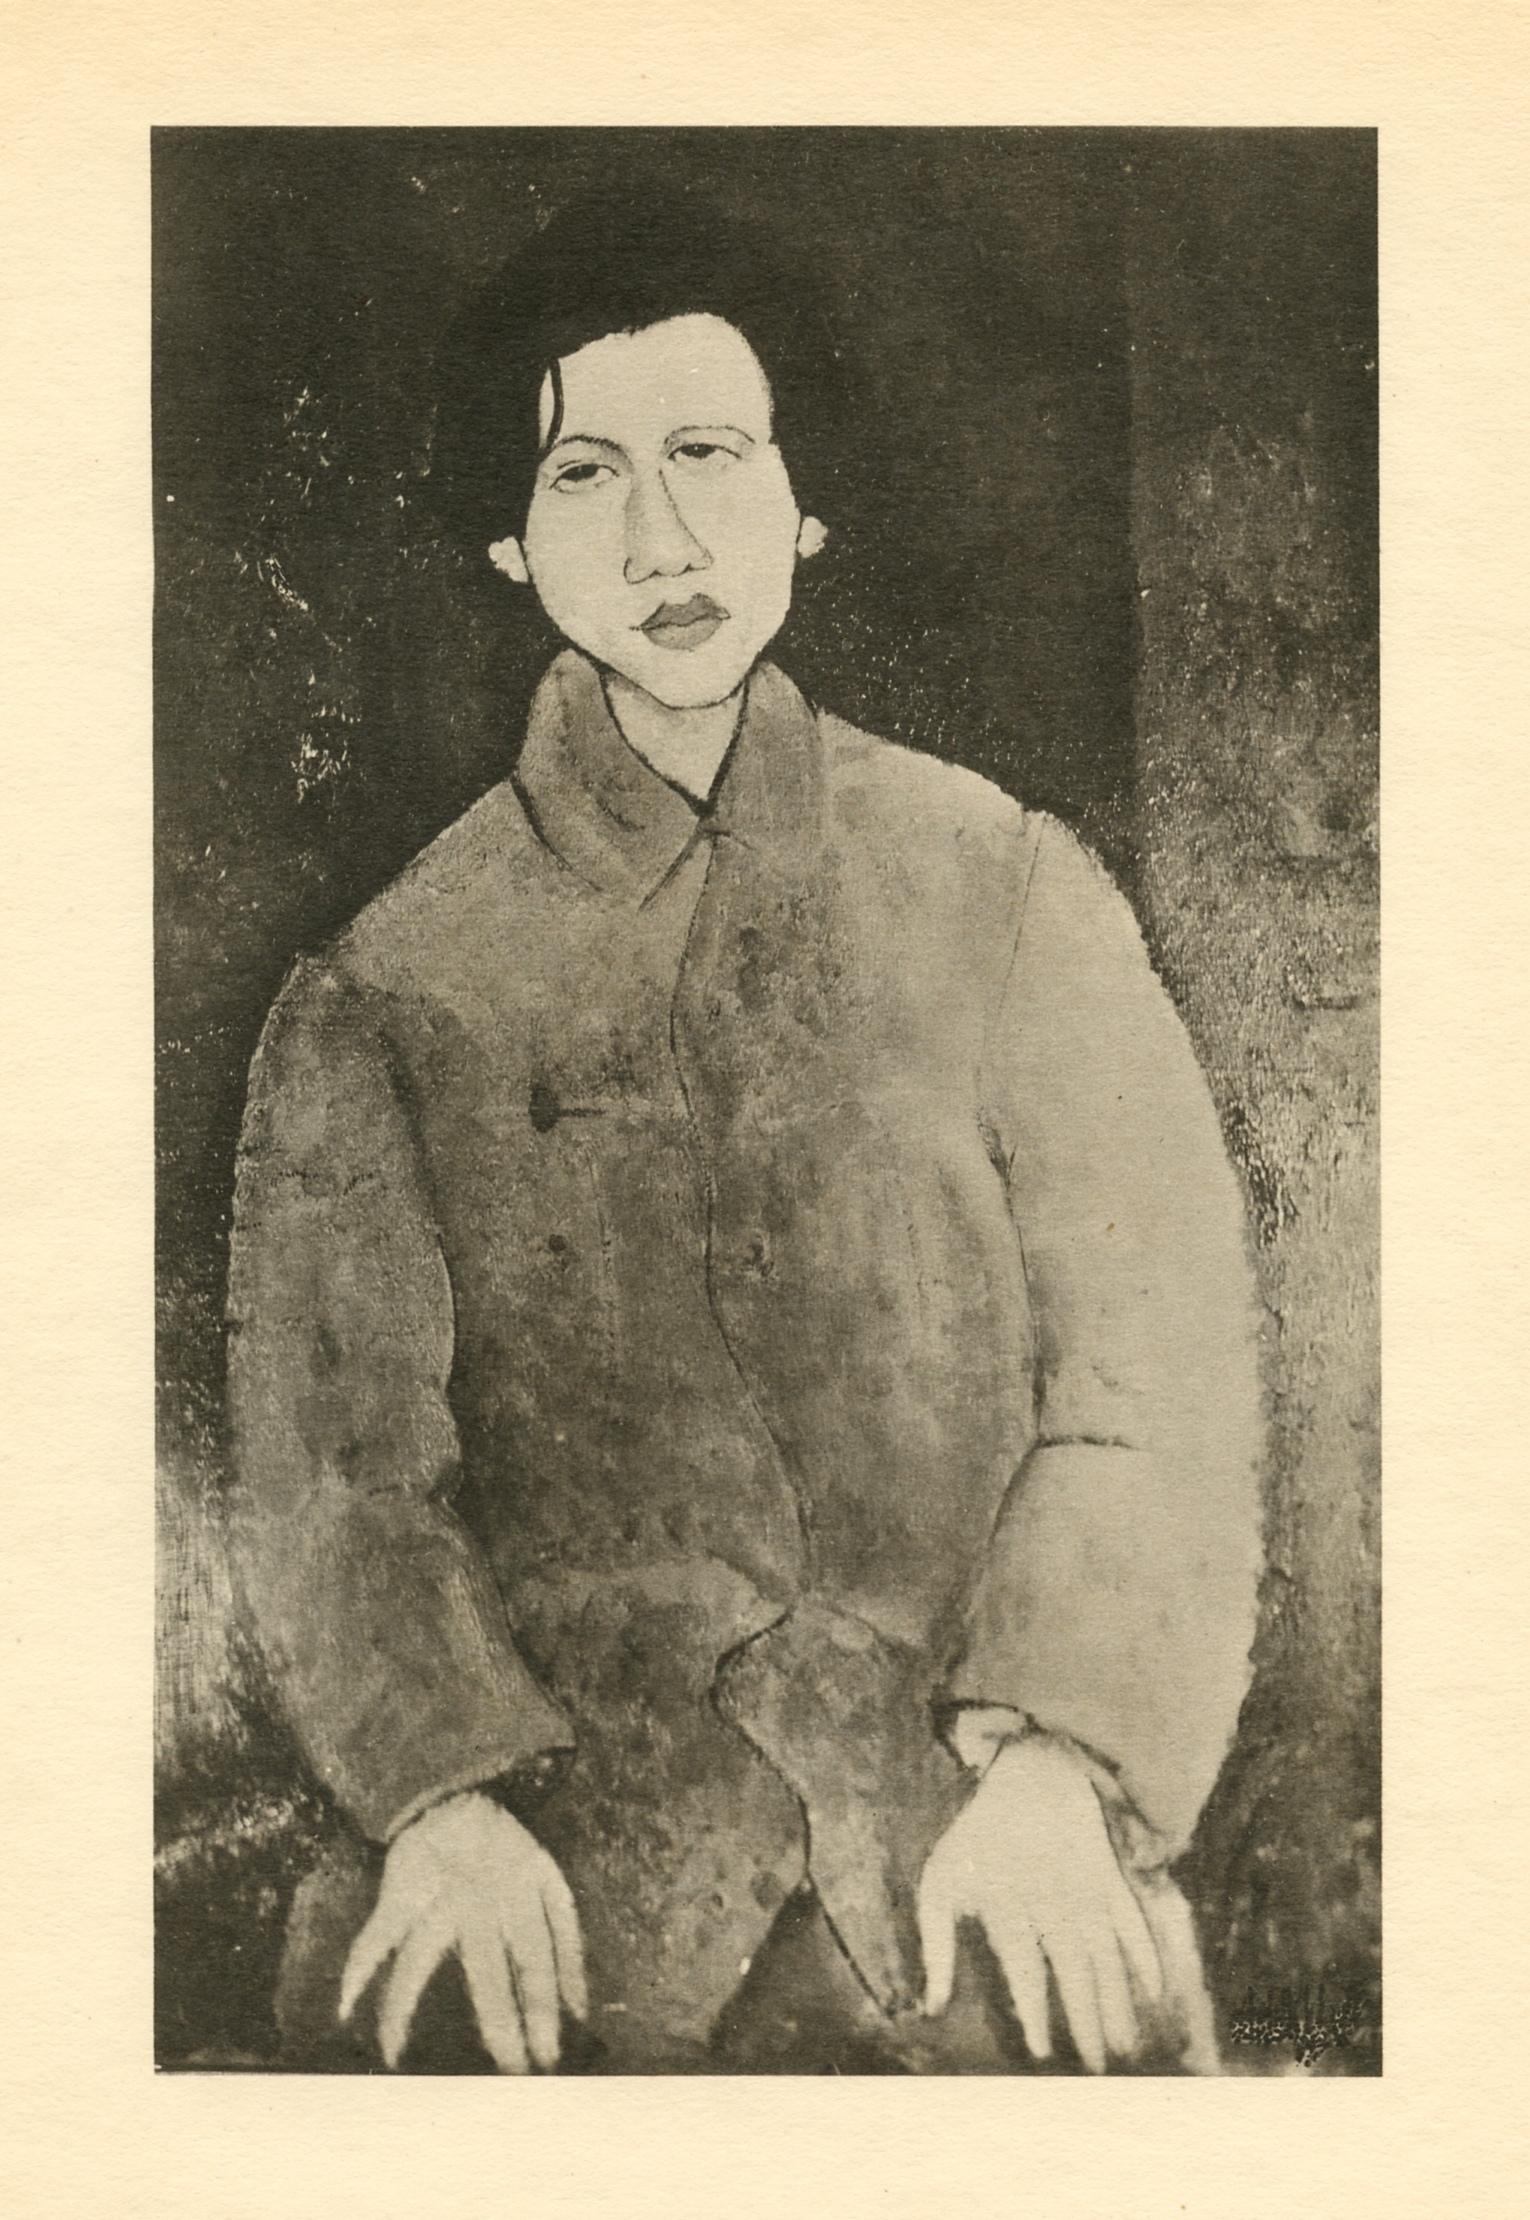 Medium: Lichtdruck (nach dem Gemälde). Gedruckt 1926 im Atelier von Leon Marotte und veröffentlicht in einer Auflage von 1000 Exemplaren bei Editions des Quatre Chemins. Bildgröße: 8 x 5 Zoll (206 x 130 mm). Blattgröße: 11 x 8 1/4 Zoll (280 x 210